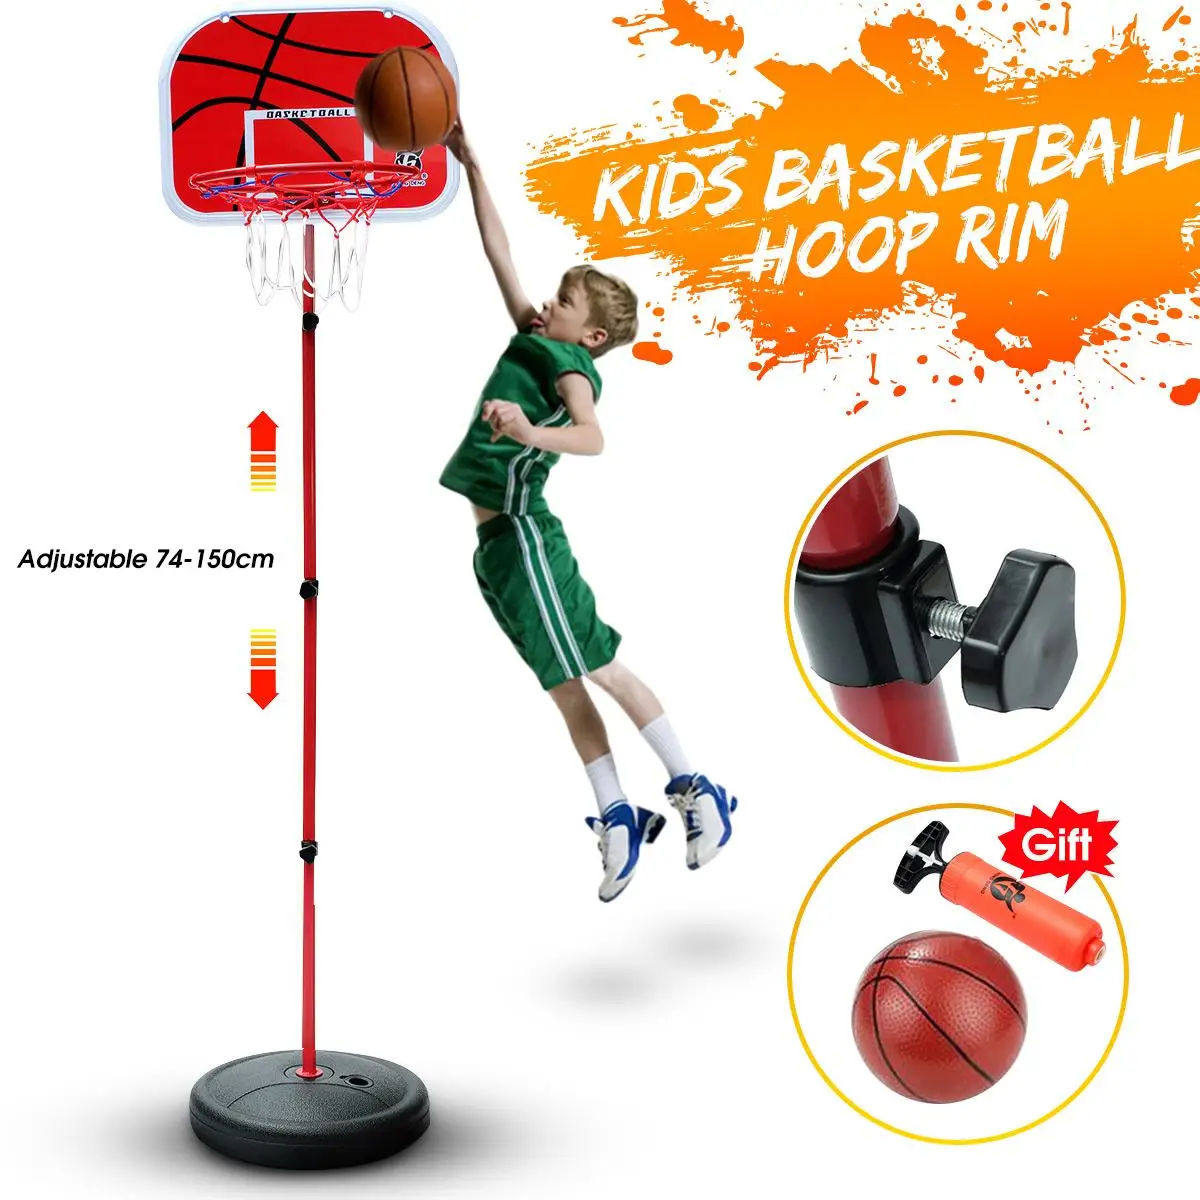 

72-150 см баскетбольные стенды с регулировкой по высоте, детская баскетбольная цель обруч набор игрушек для баскетбола для мальчиков трениров...